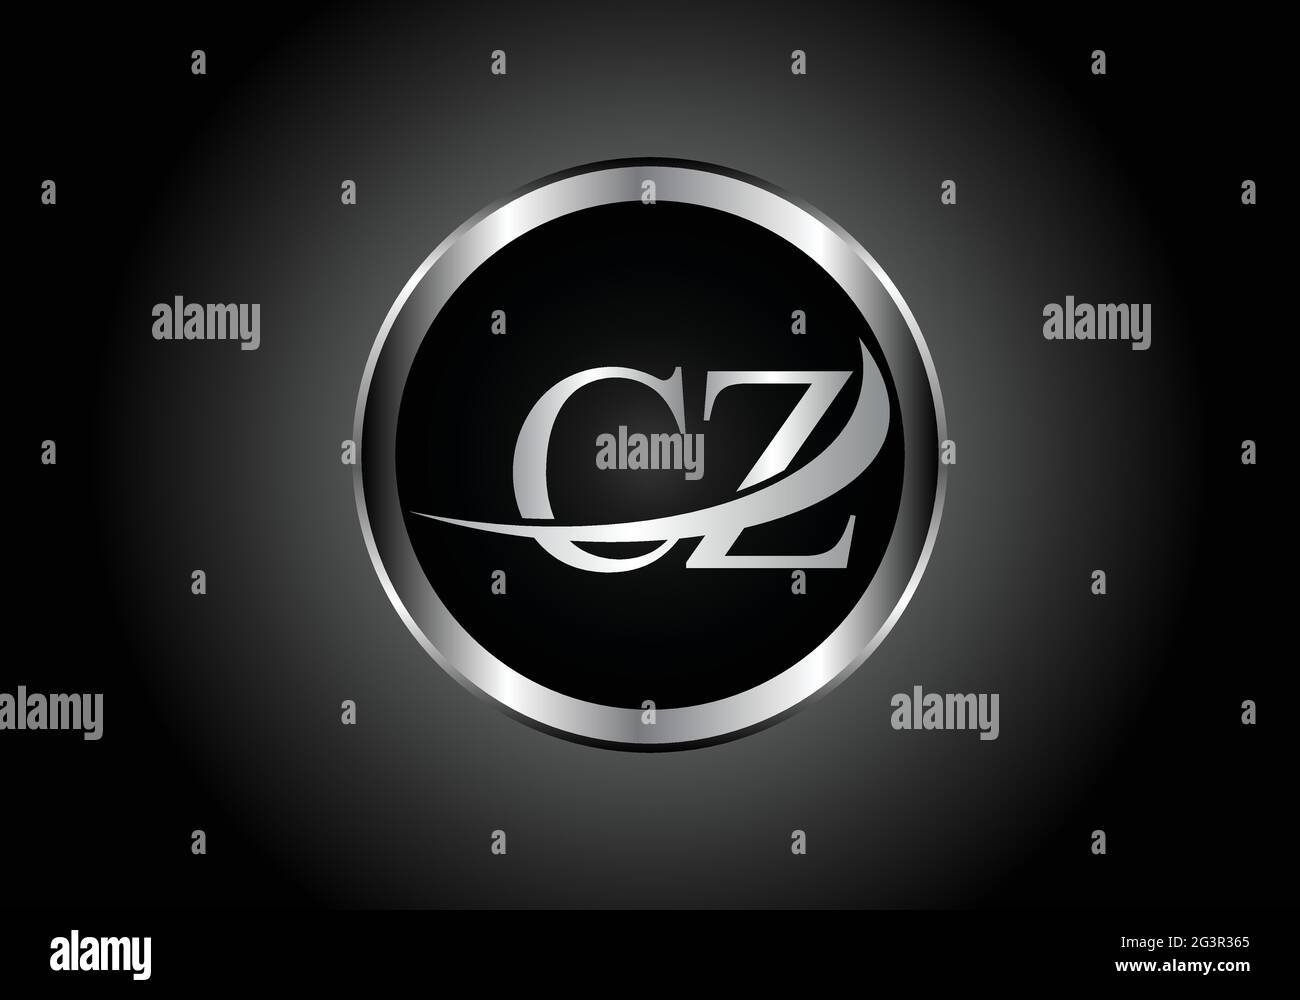 Silberner Buchstabe CZ Metallkombination Alphabet Logo Icon Design mit grauer Farbe auf Schwarz-Weiß-Gradienten-Design für ein Unternehmen oder Unternehmen Stock Vektor